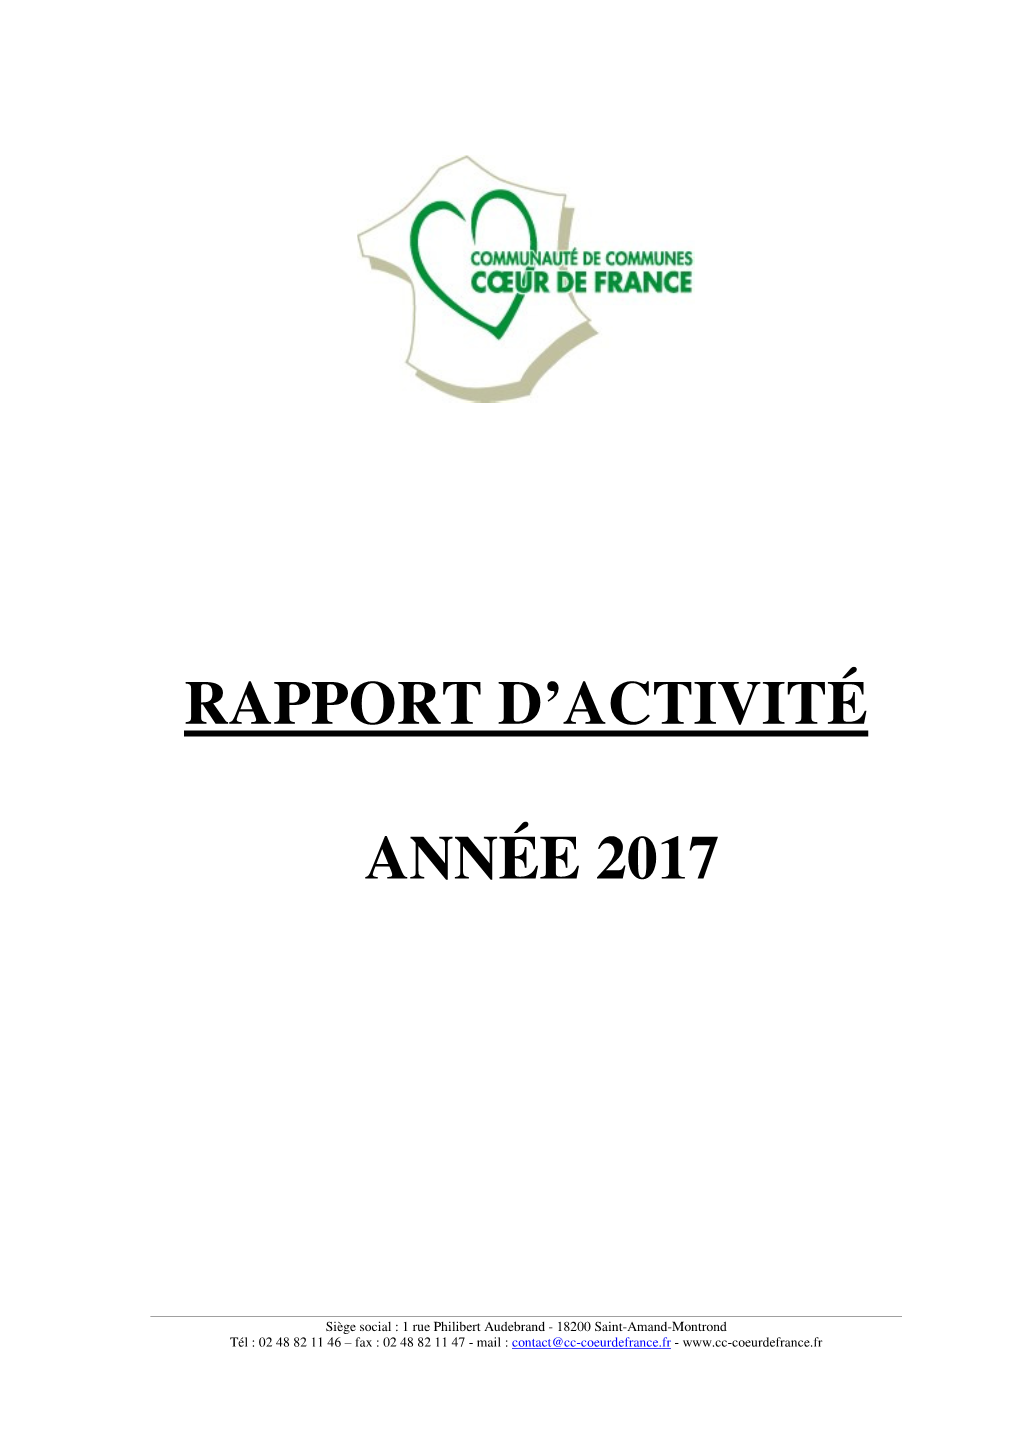 Rapport D'activités De Coeur De France – Année 2017